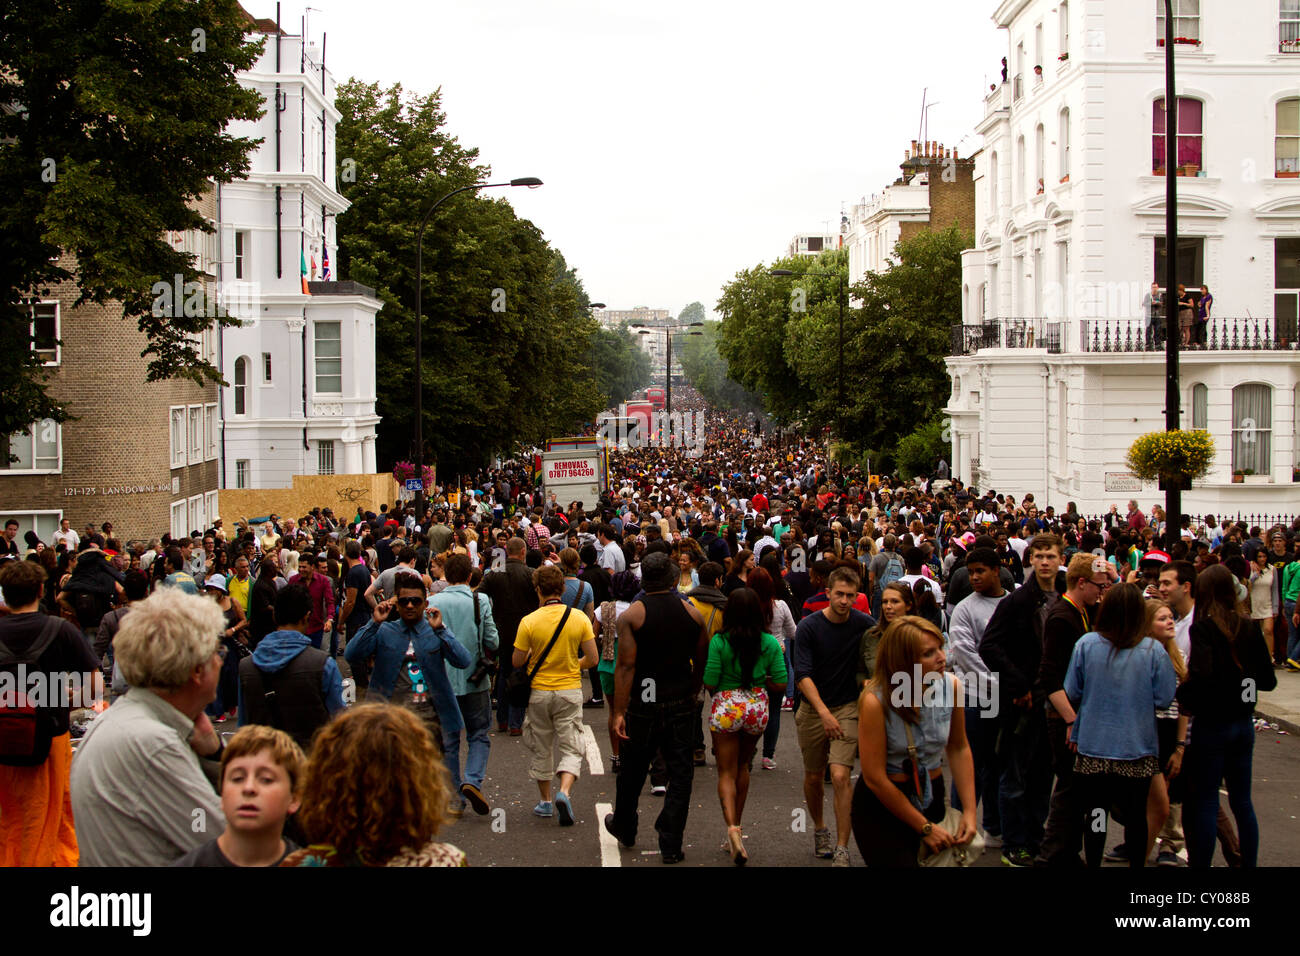 Tausende von Menschen, die alle zu Fuß in die gleiche Richtung, Notting Hill Gate Carnival in London Vereinigtes Königreich. Stockfoto